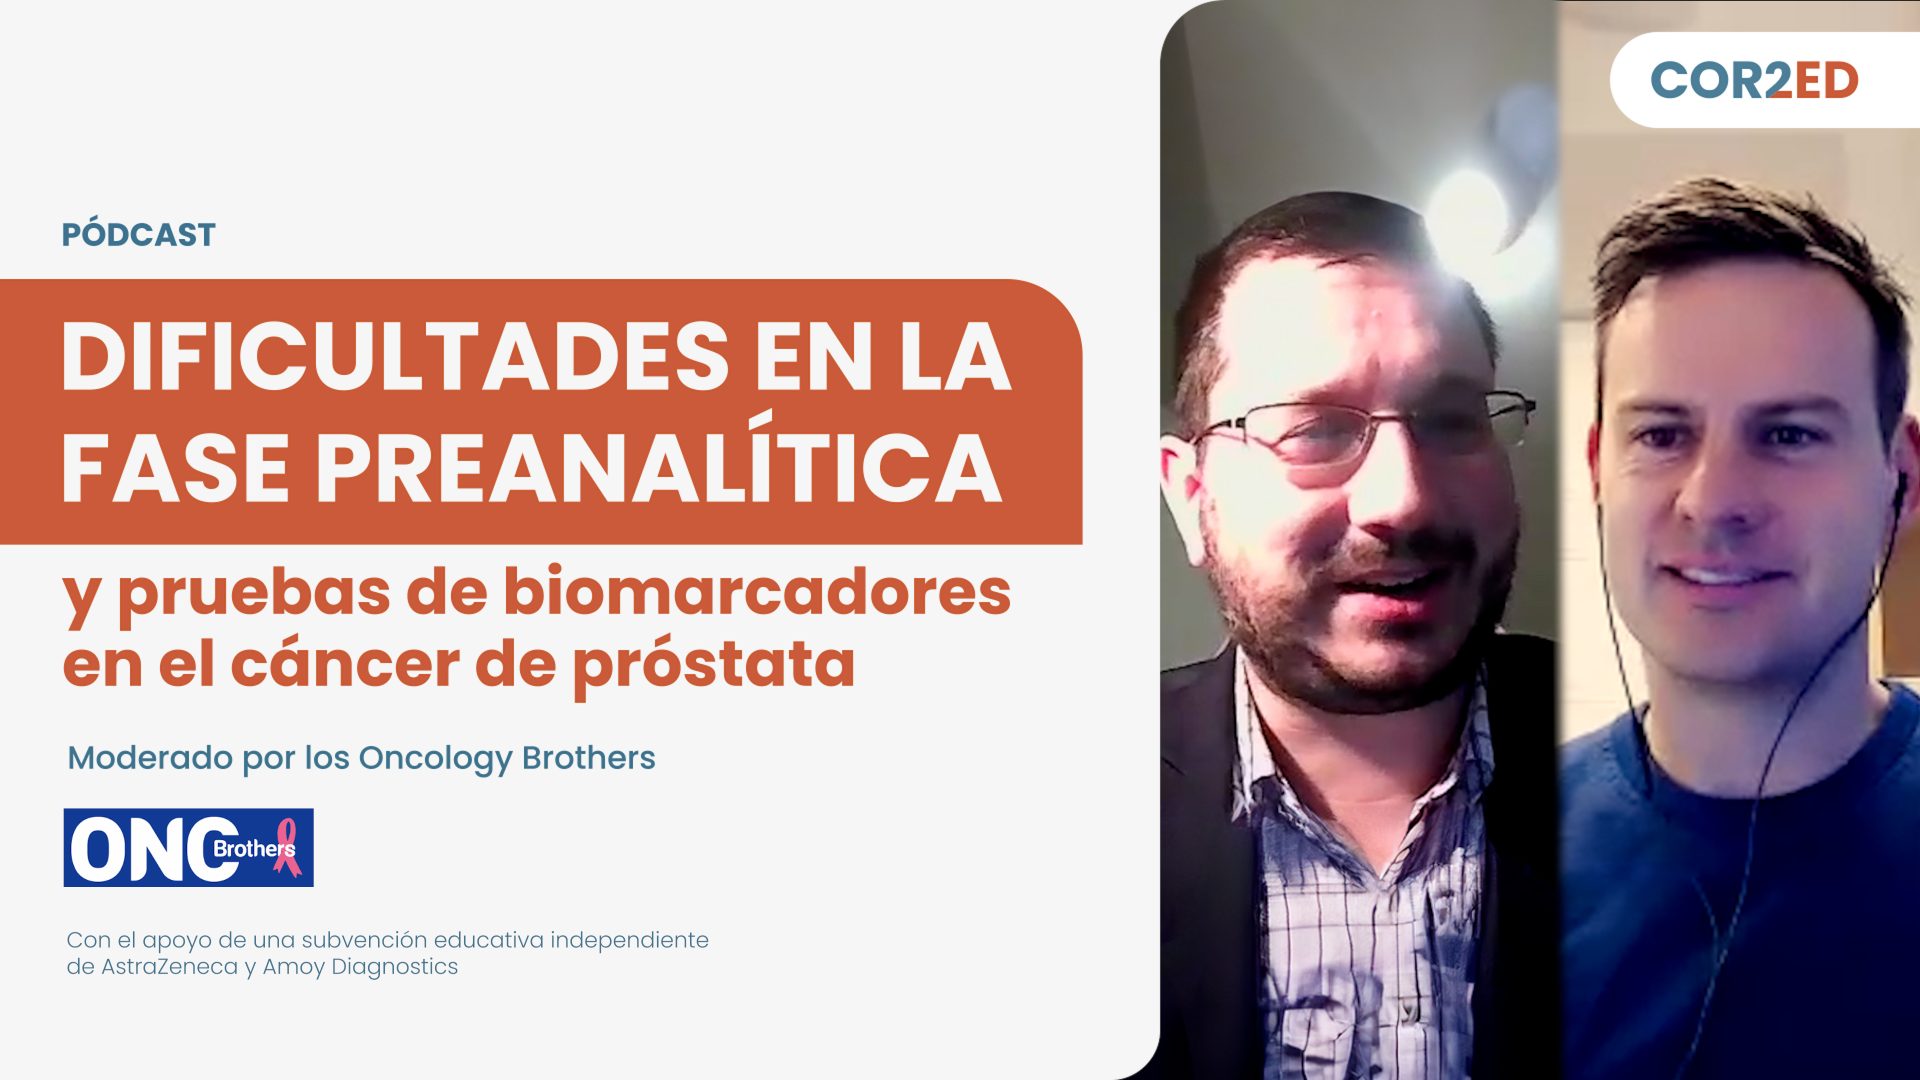 Cáncer de próstata: Dificultades en la fase preanalítica y pruebas de biomarcadores (Spanish)